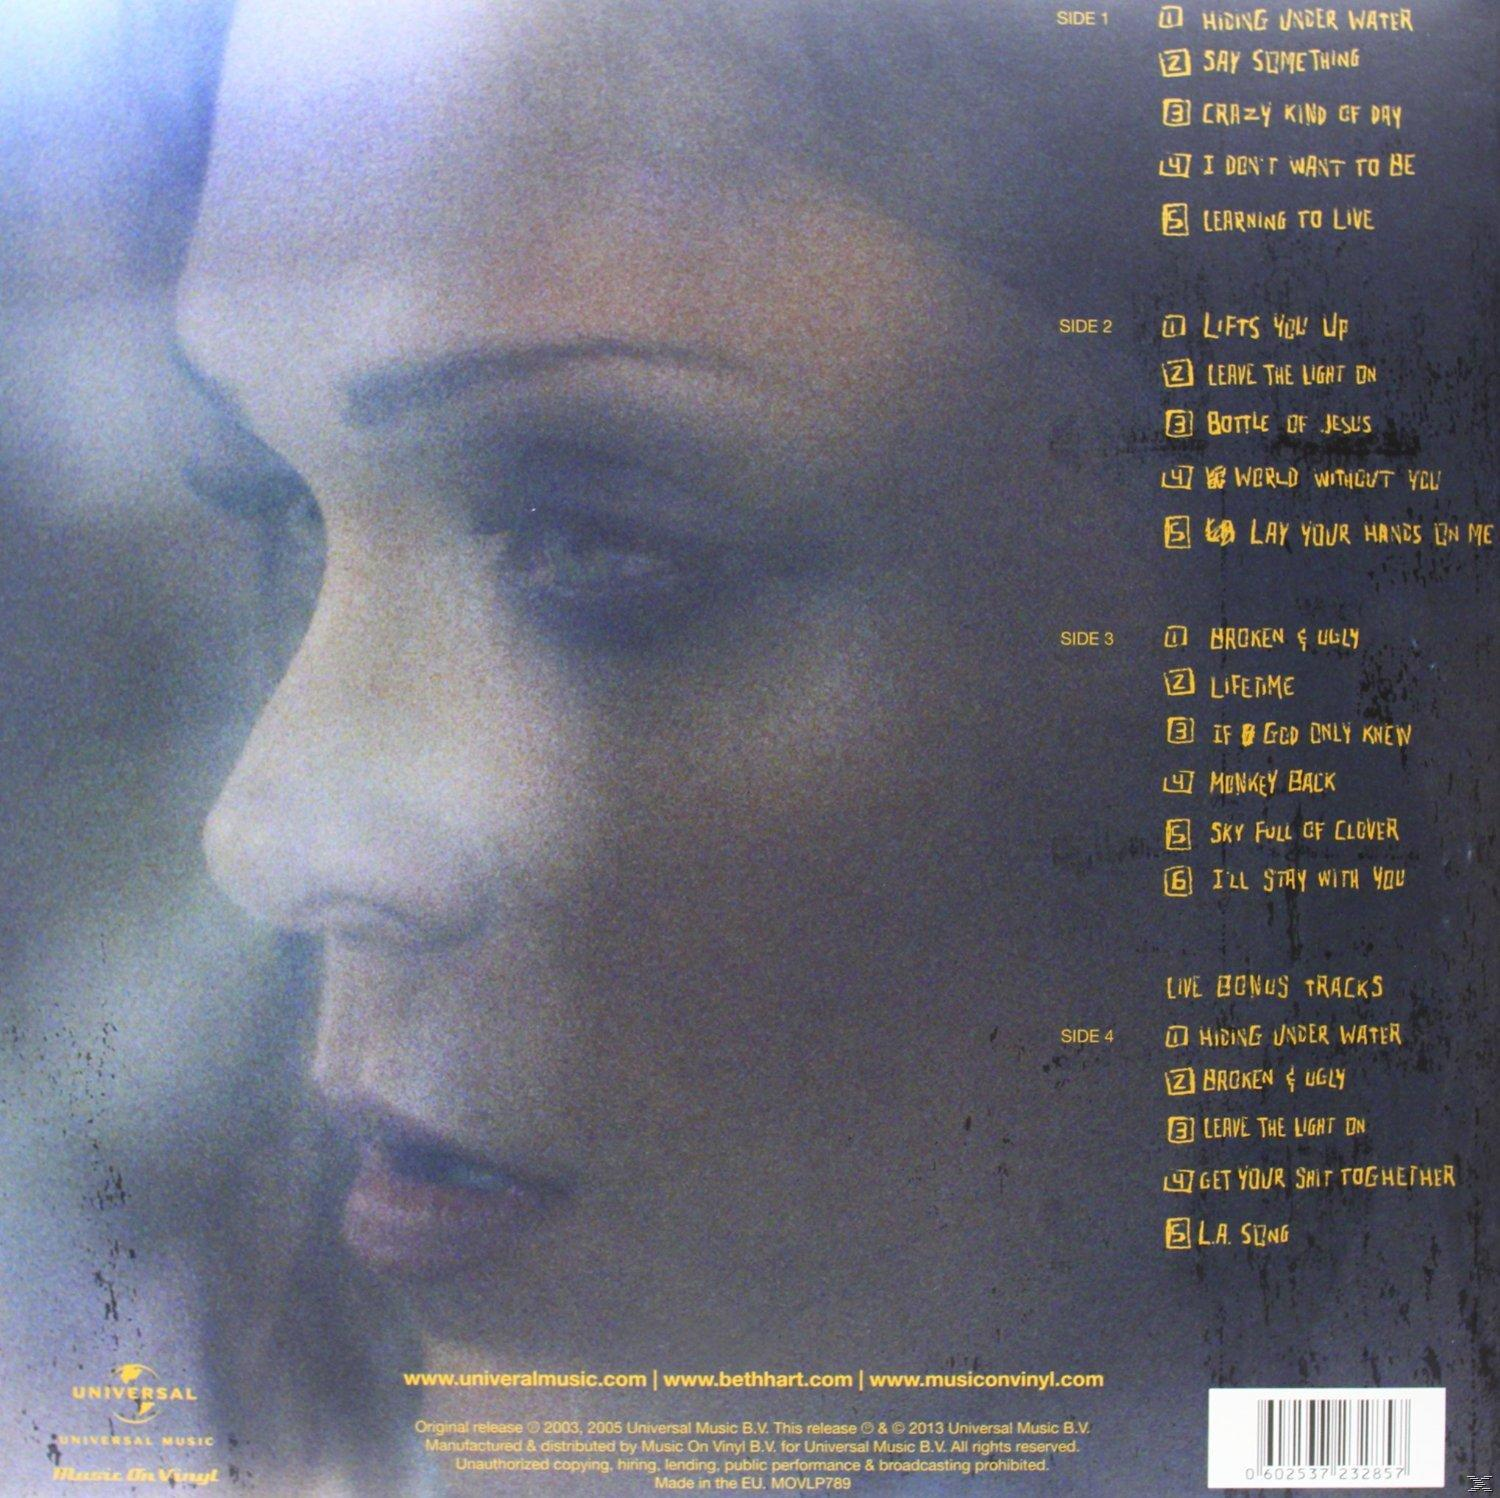 Beth Hart - Light The - On (Vinyl) Leave